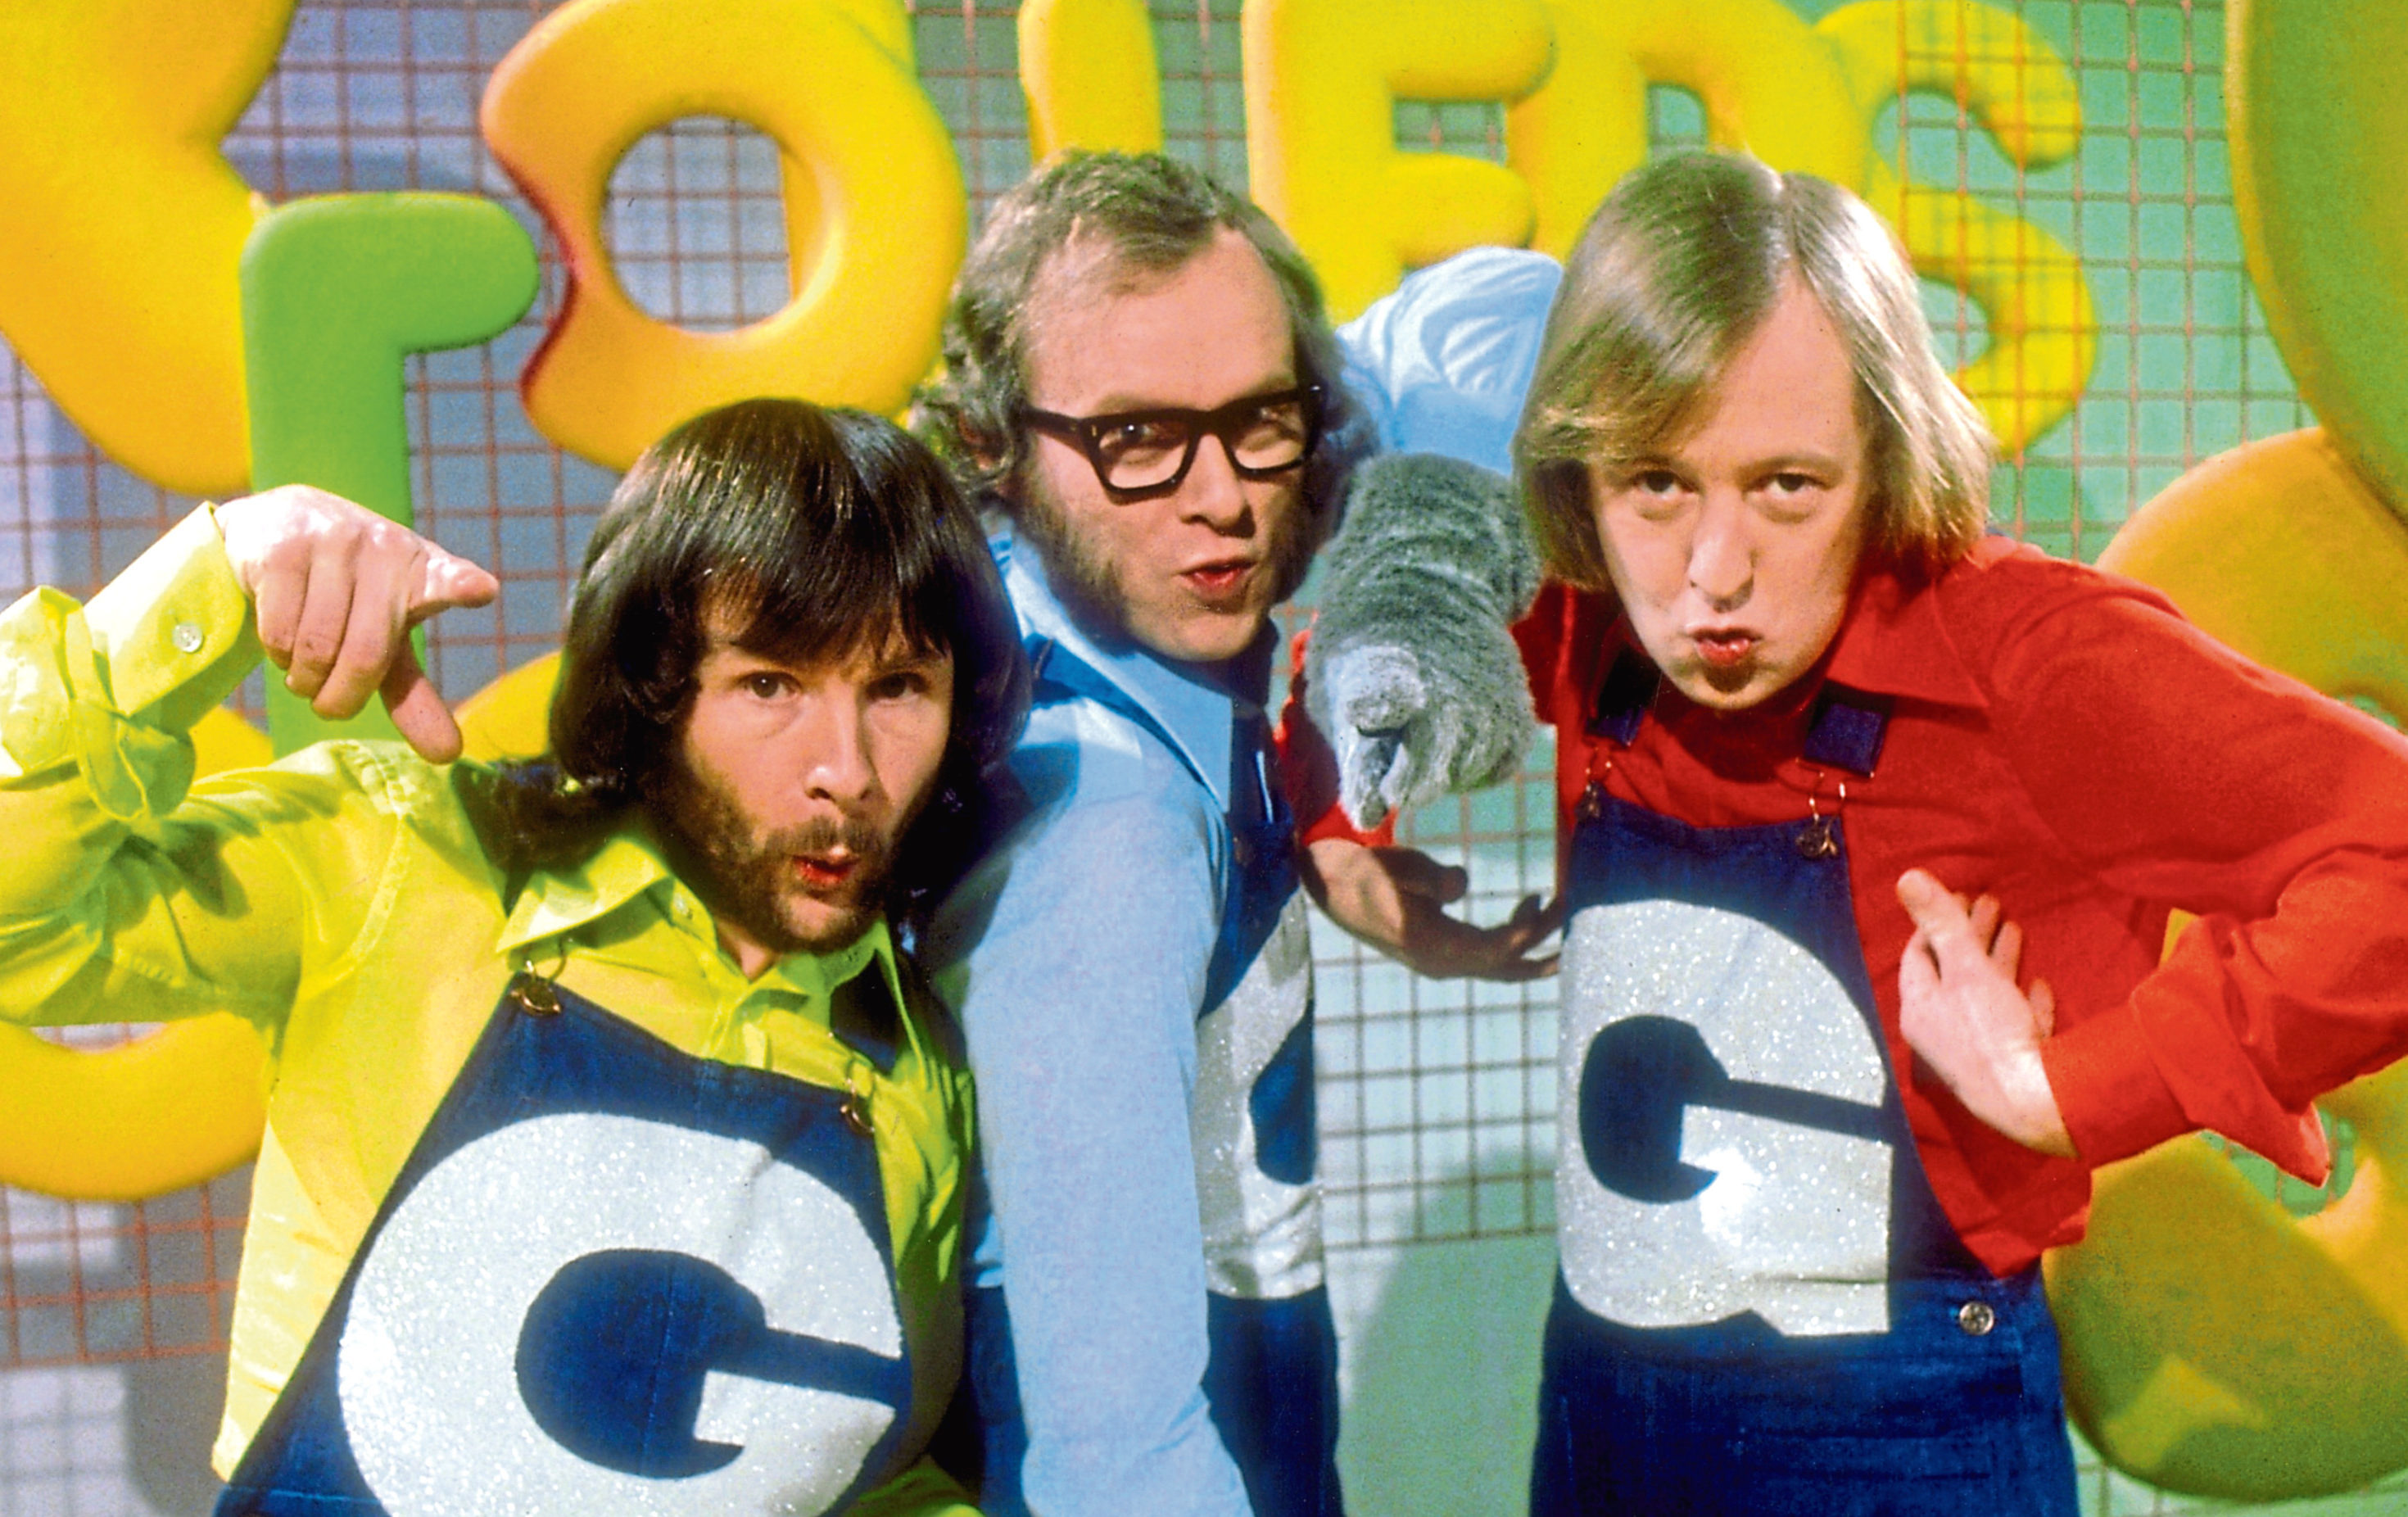 Bill Oddie, Graeme Garden, and Tim Brooke-Taylor  - a.k.a. The Goodies - in 1970 (Allstar/BBC)